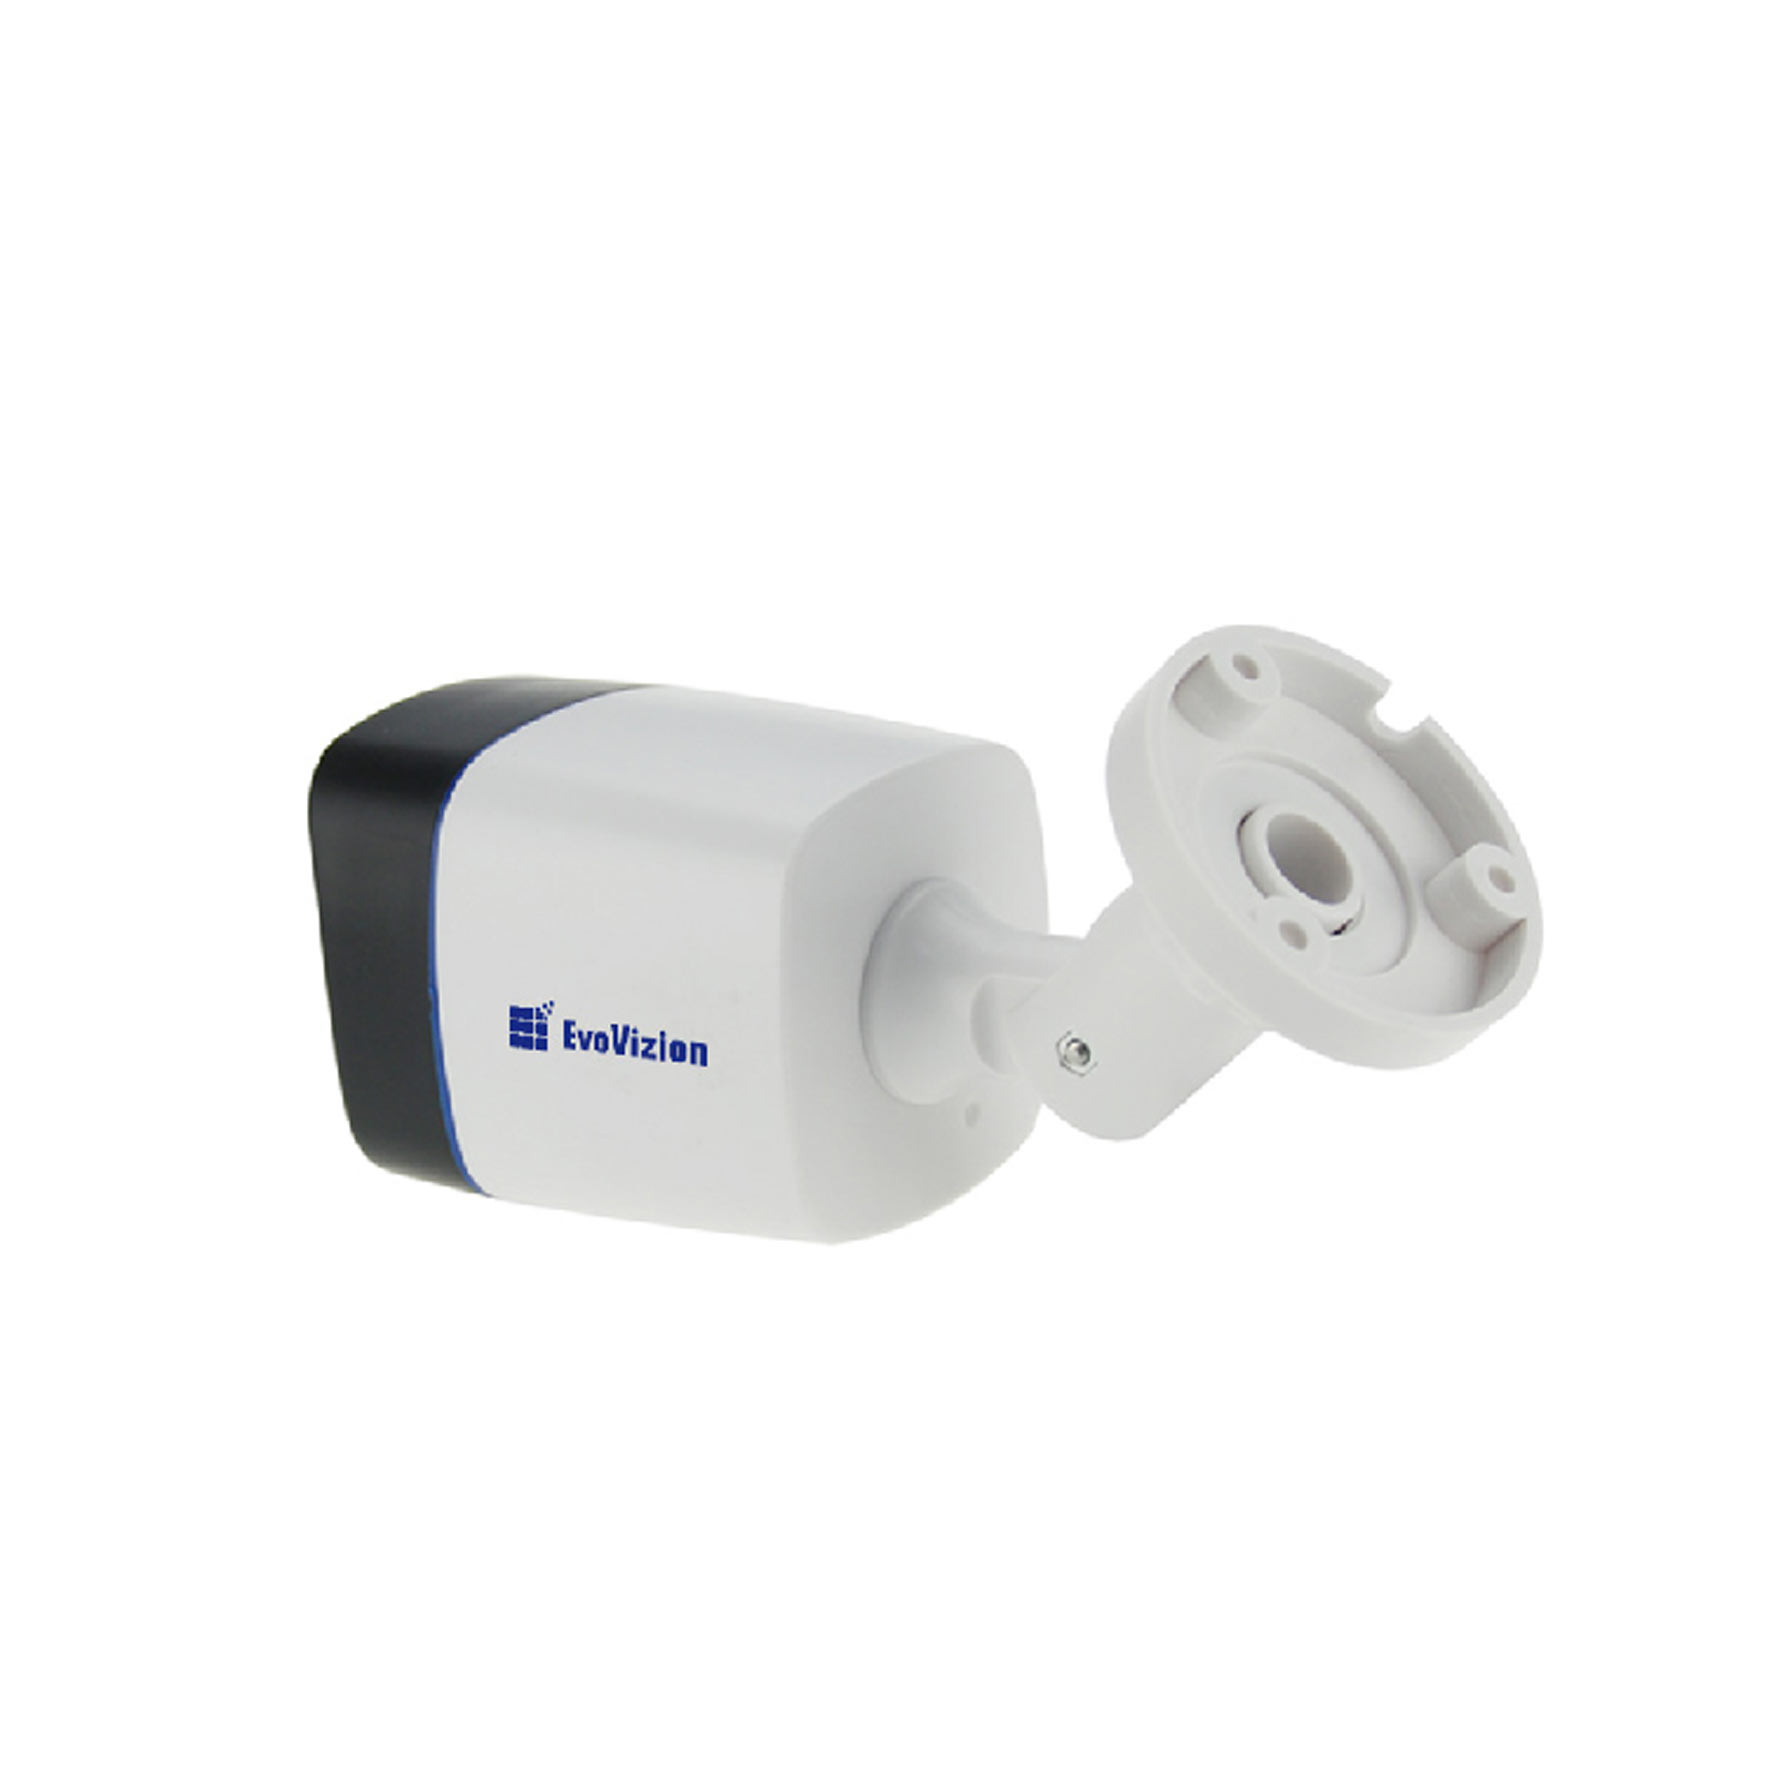 Цилиндрическая камера EvoVizion AHD-825-200